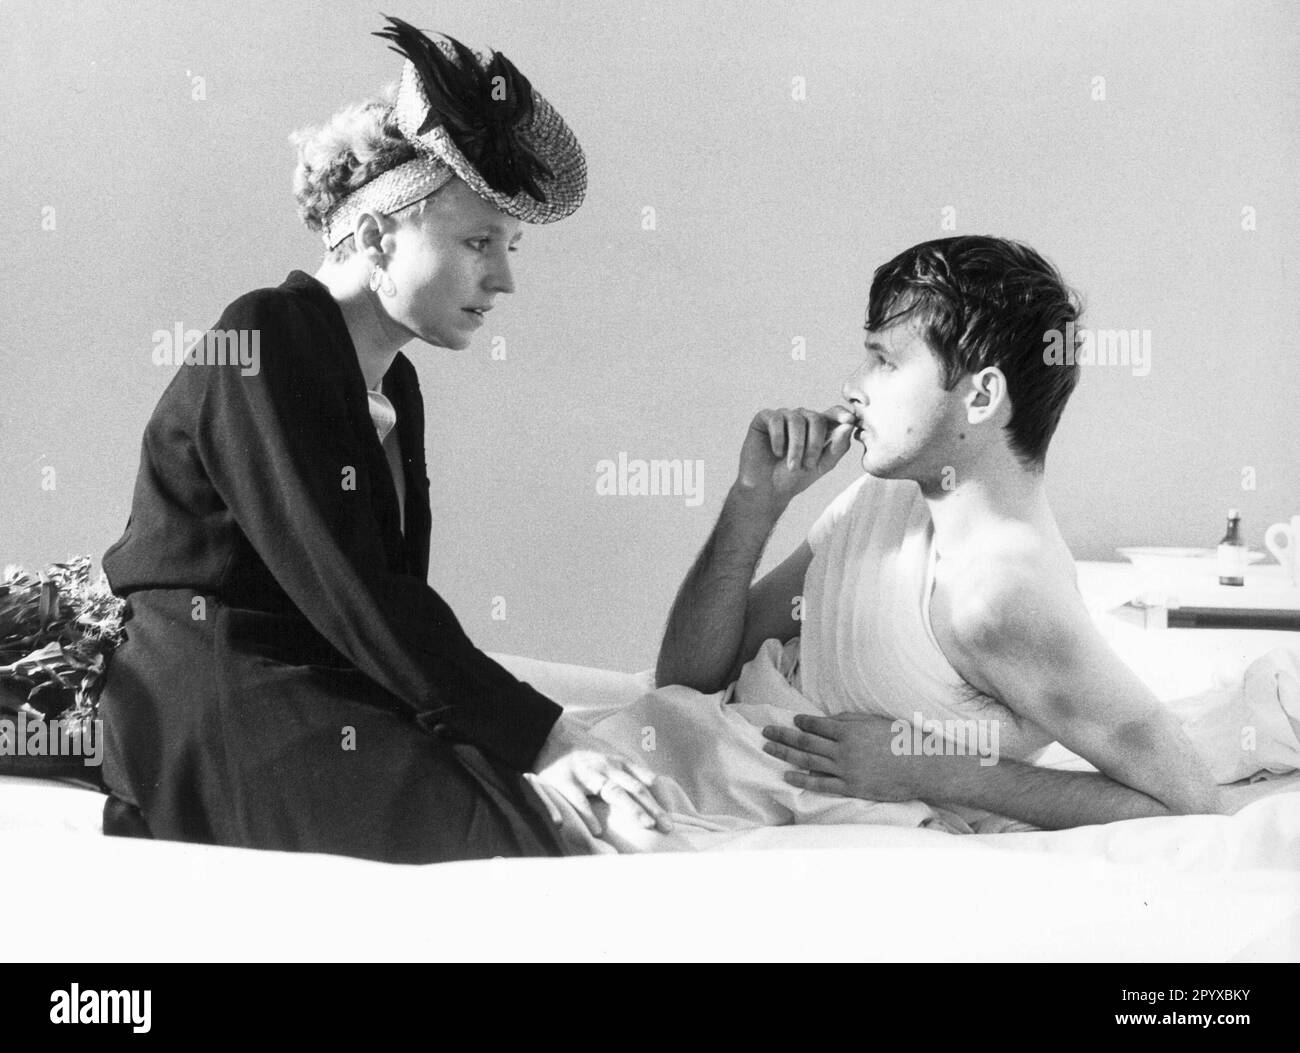 Hanna Schygulla comme Pauline Kropp avec Piotr Lysak comme Stani dans 'Un Amour en Allemagne', réalisé par Andrzej Wajda, Allemagne 1980. [traduction automatique] Banque D'Images